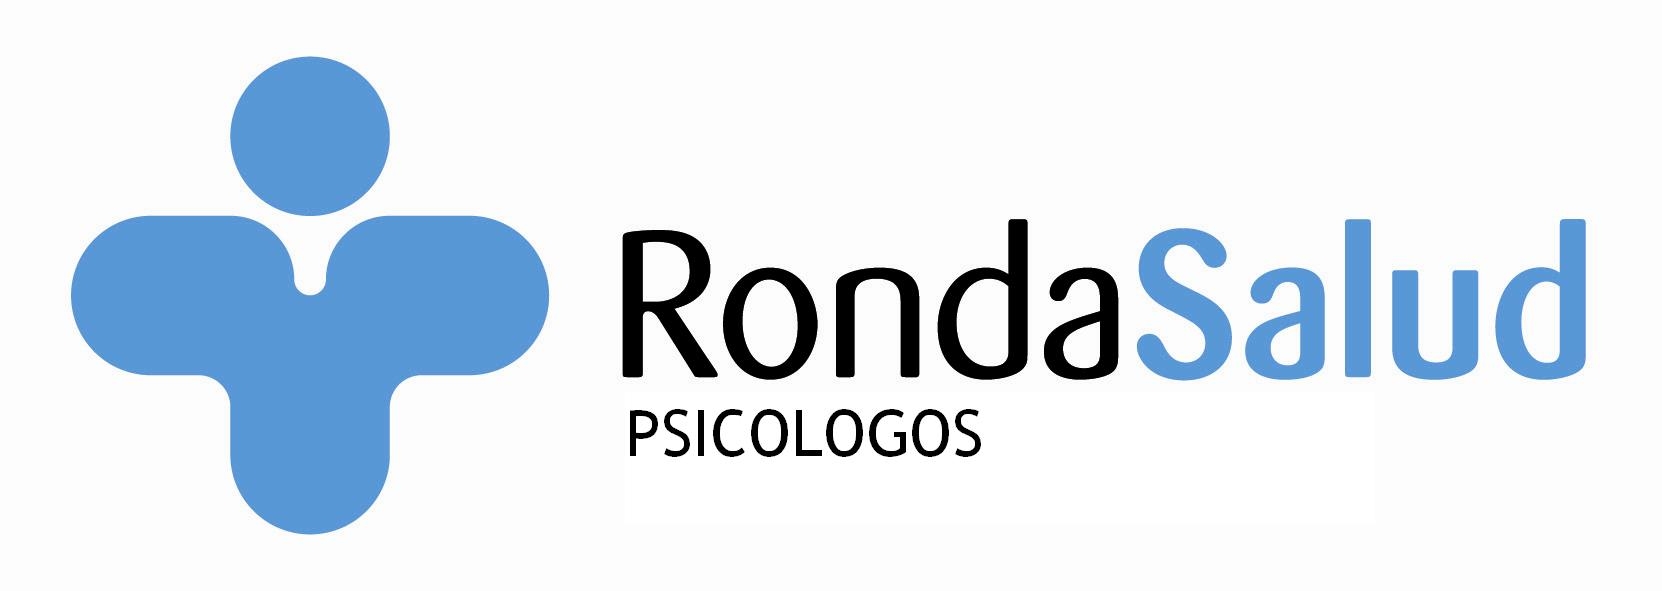 Logotipo de la clínica Rondasalud Psicólogos Marbella